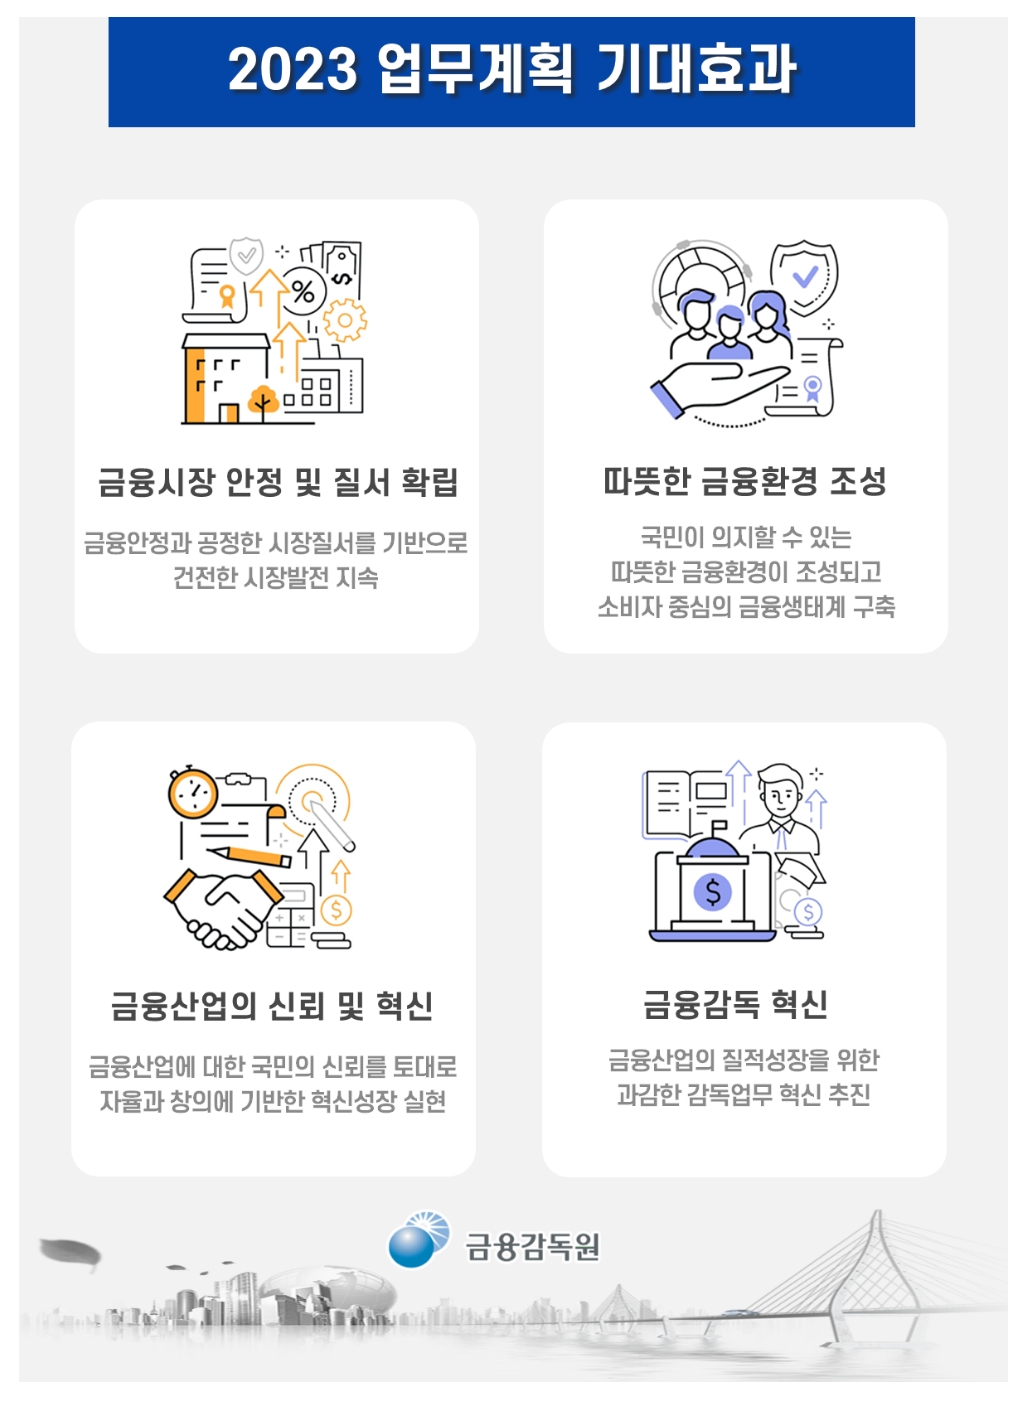 금융감독원의 2023년 업무계획 기대효과. /자료제공=금융감독원